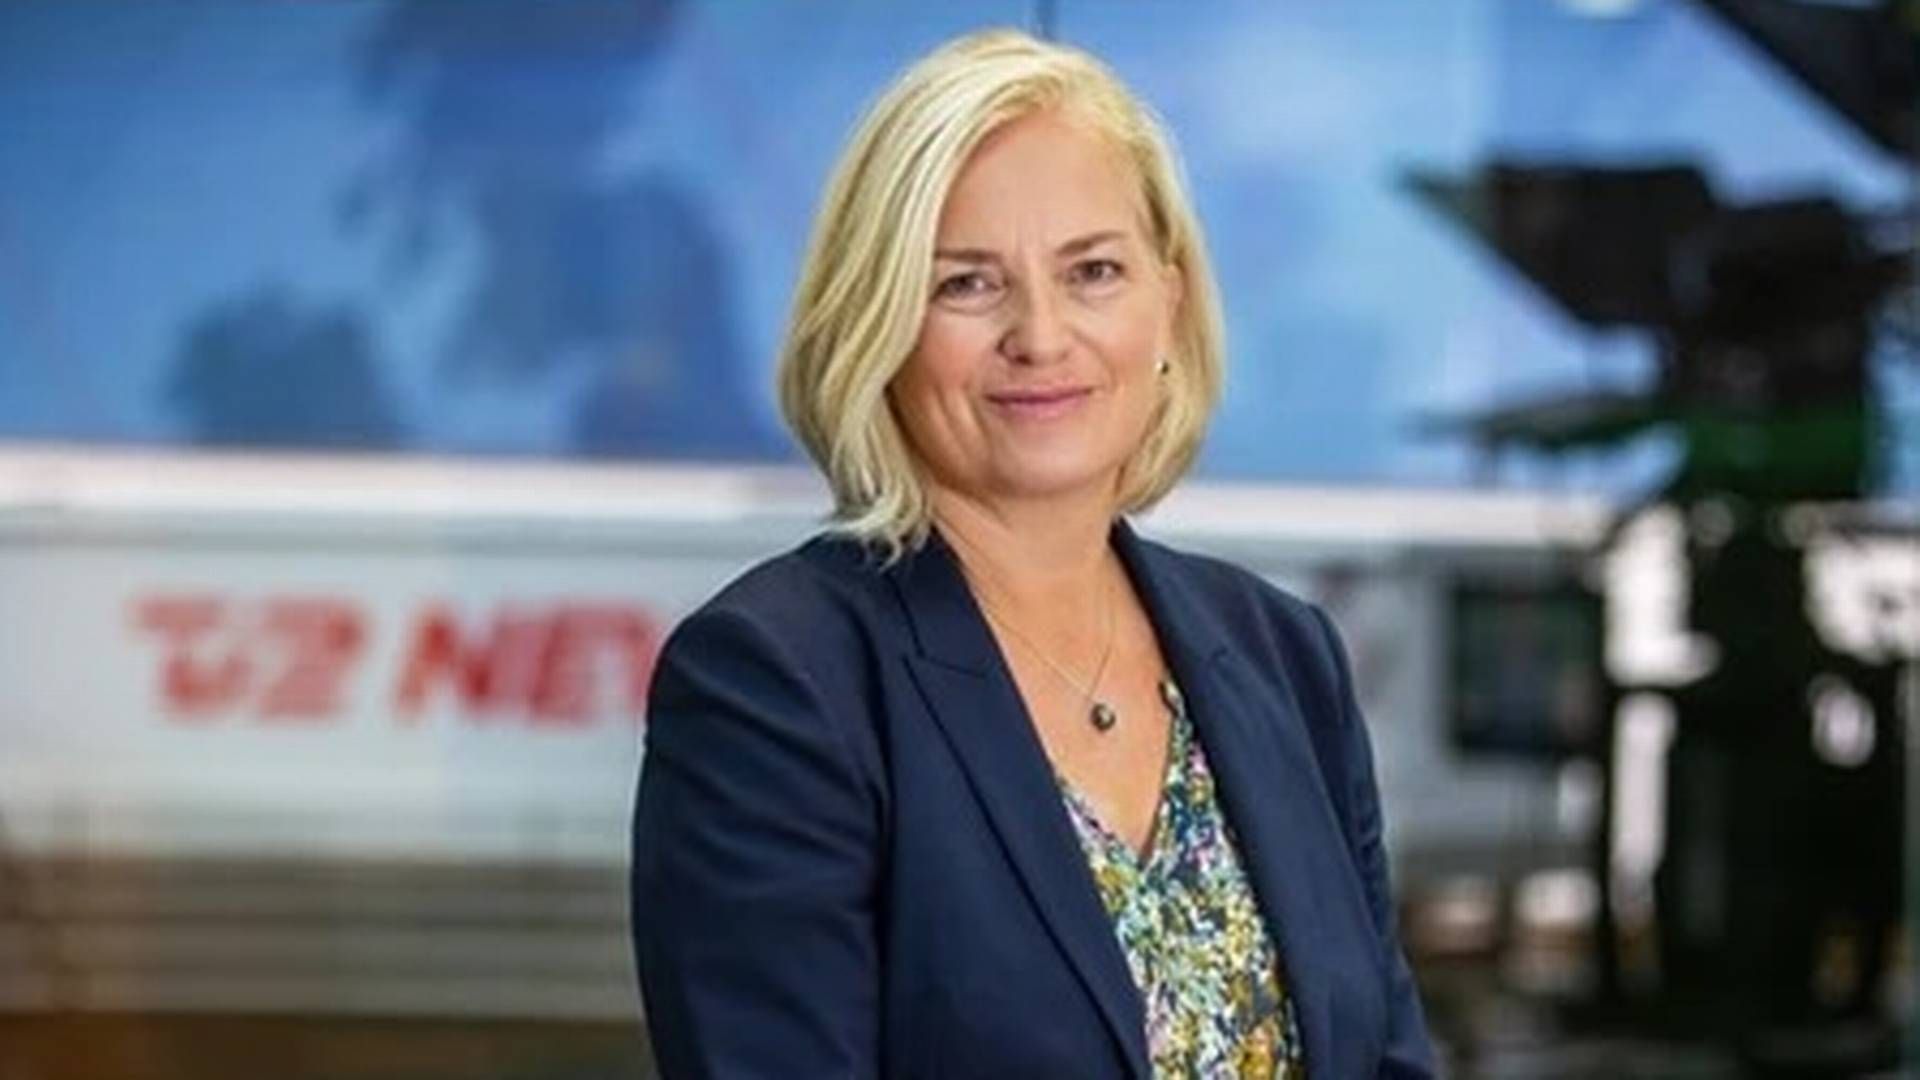 Lotte Mejlhede skal fra efteråret være TV 2's USA-korrespondent. Hun afløser Jesper Steinmetz, der skal være broadcasterens Europa-korrespondent. | Foto: Pressefoto Tv 2